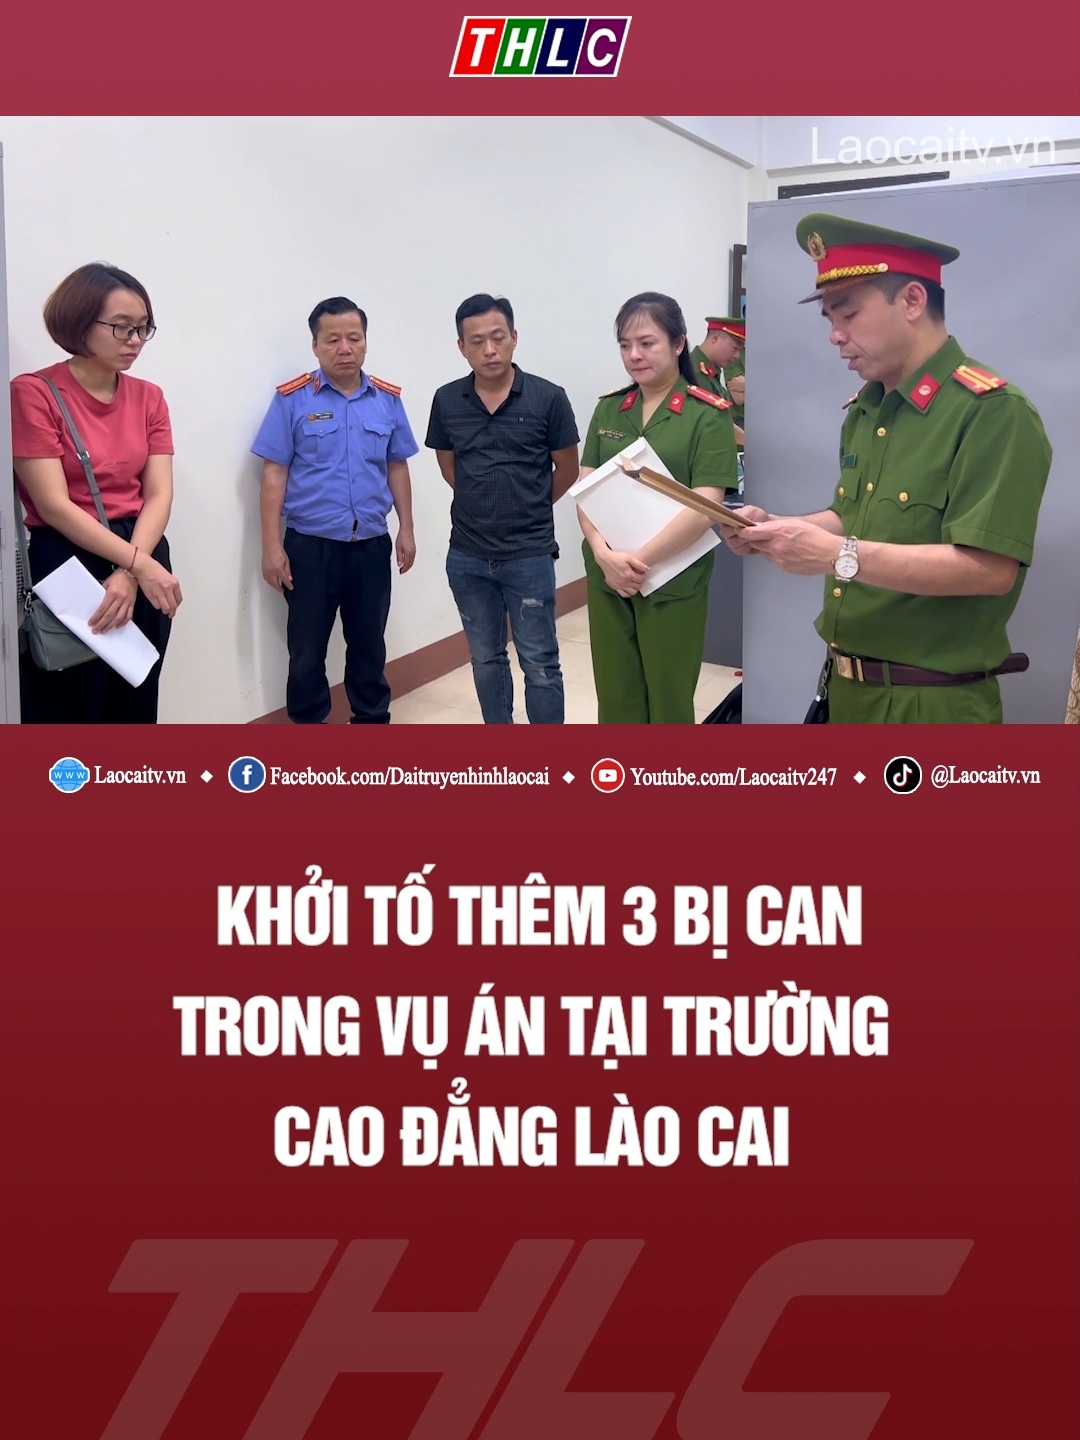 Khởi tố thêm 3 bị can trong vụ án tại Trường Cao đẳng Lào Cai #Laocaitv.vn #khoitobican #sathachlaixe